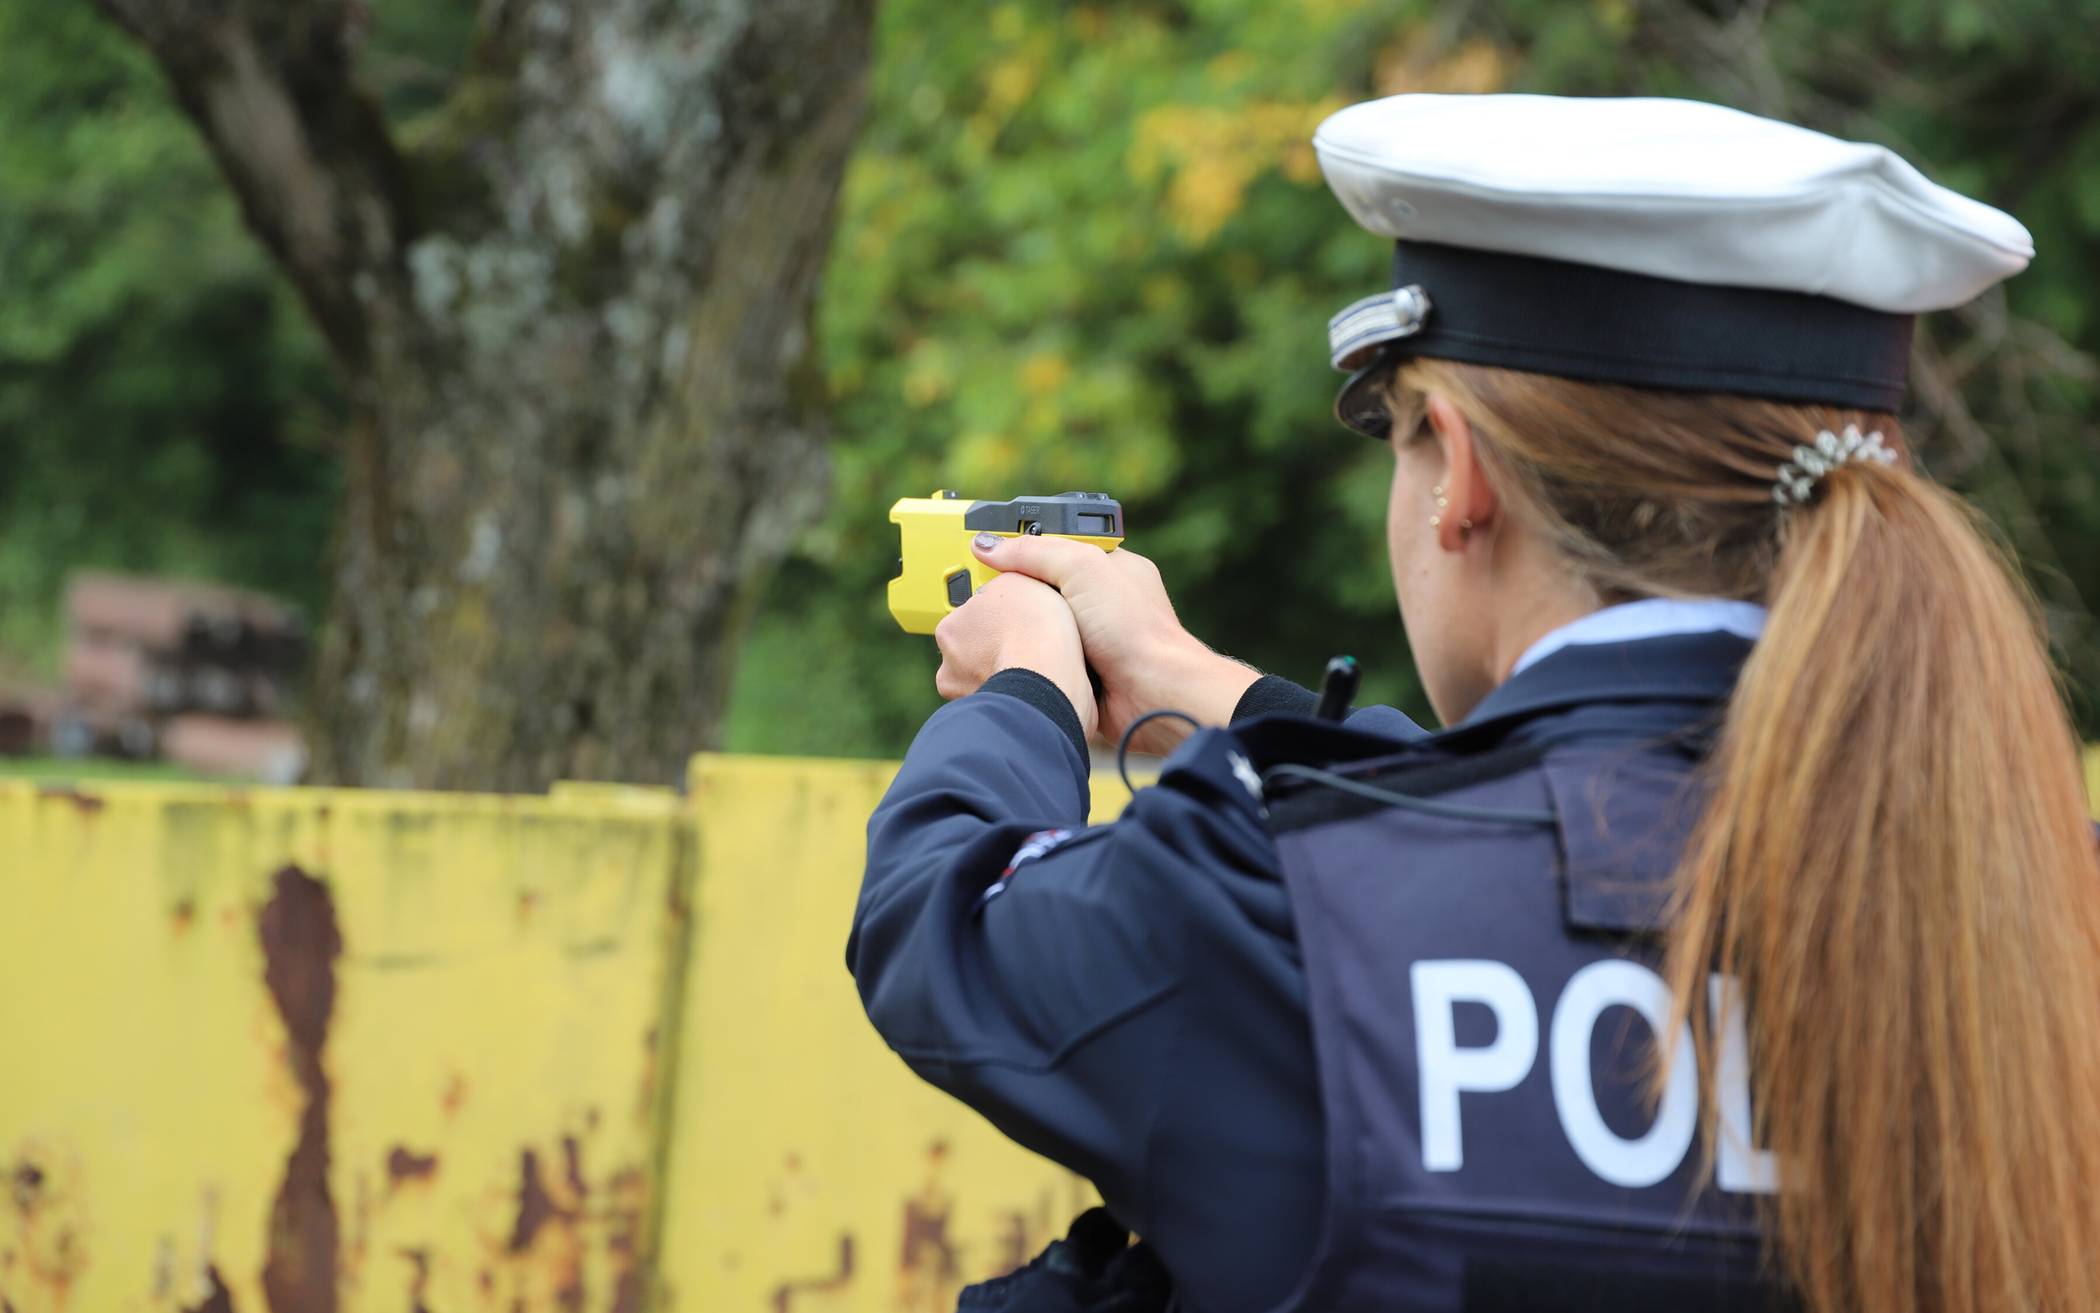 Polizei-Taser nun auch in Elberfeld im Einsatz